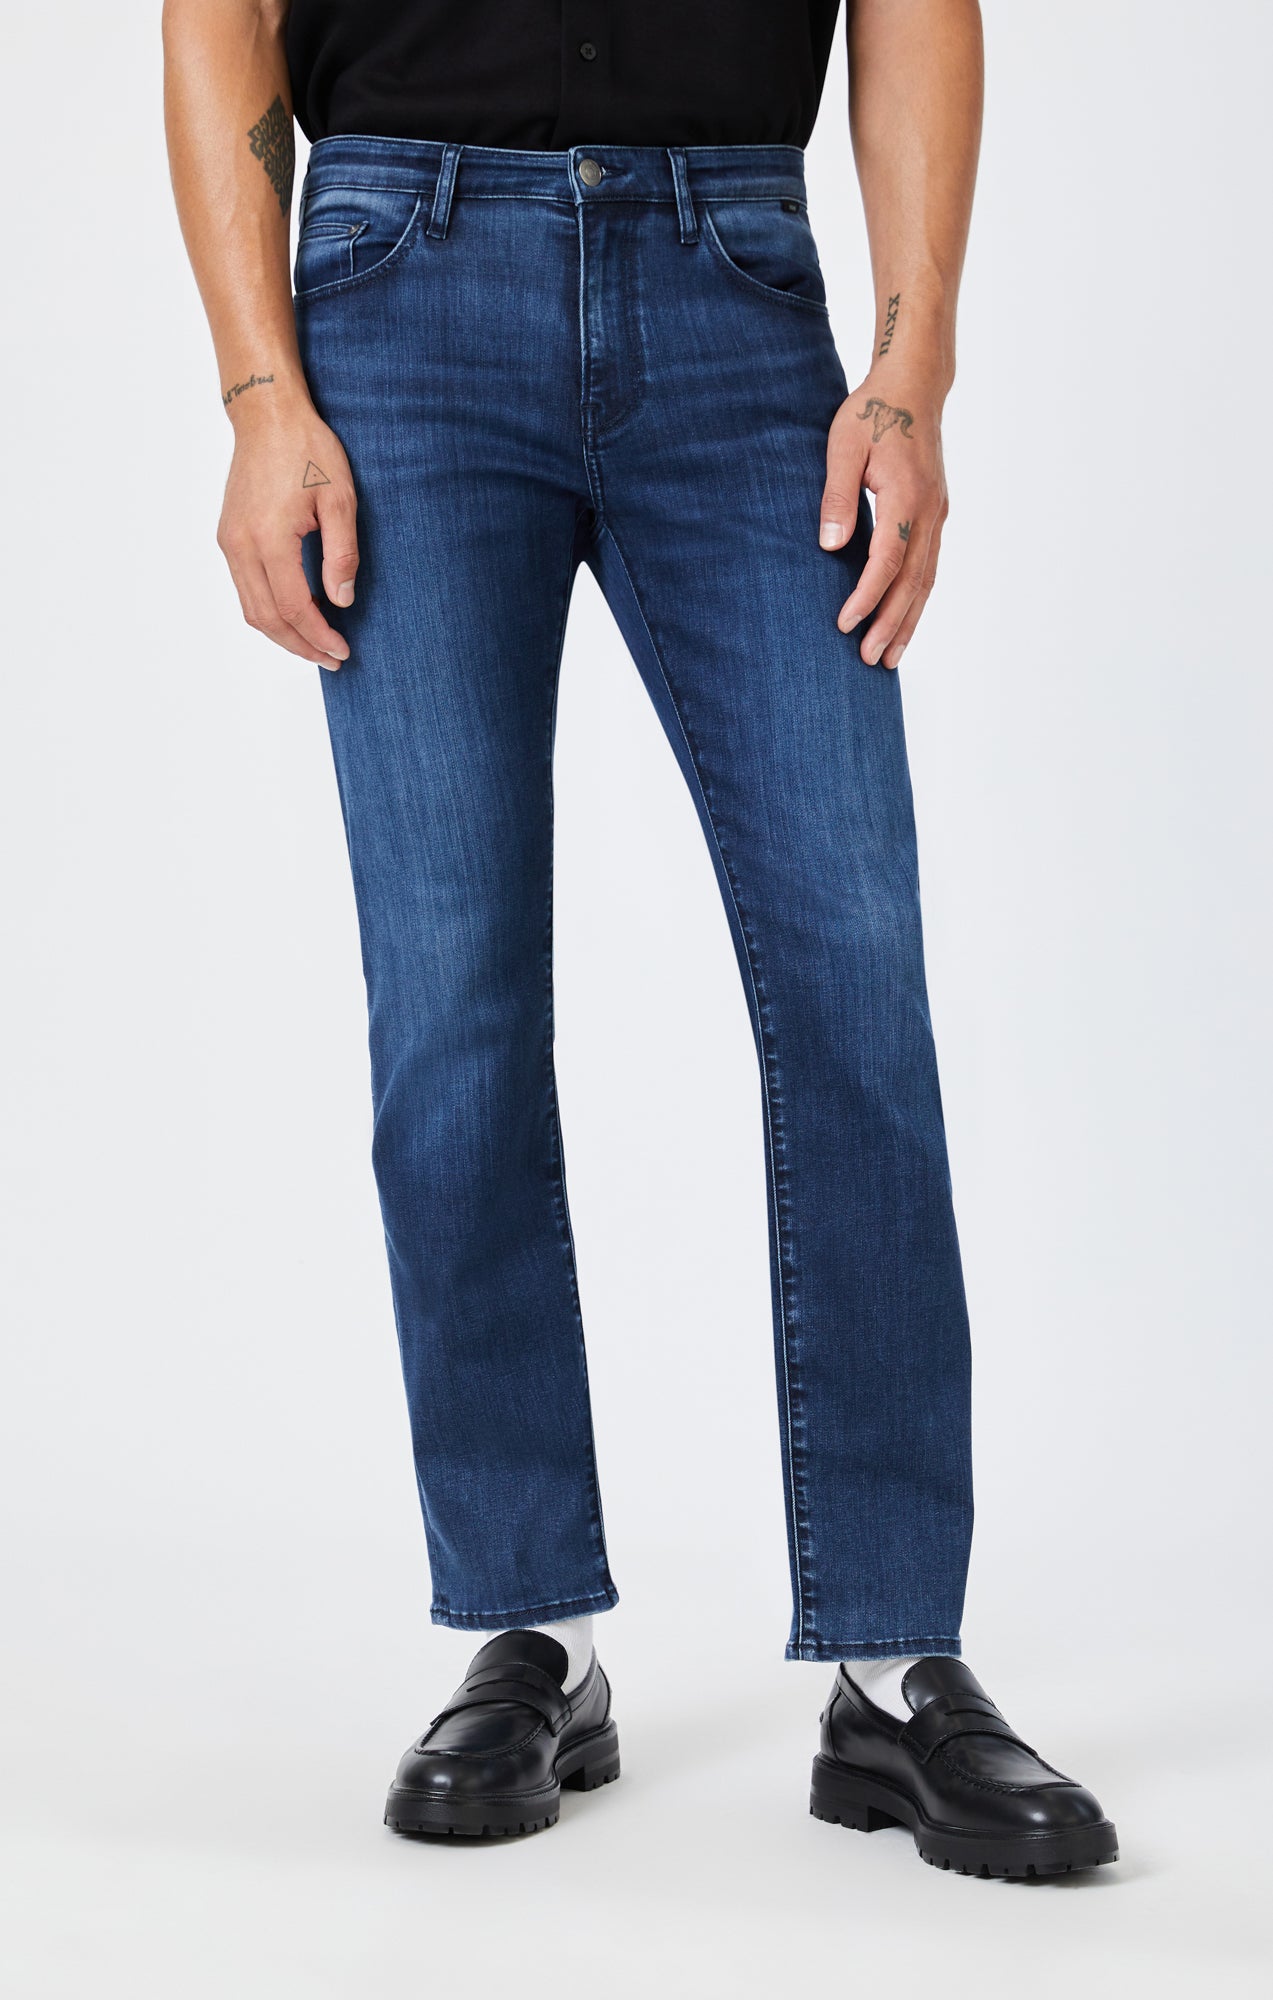 Straight Leg Jeans for Men, Mens Jeans